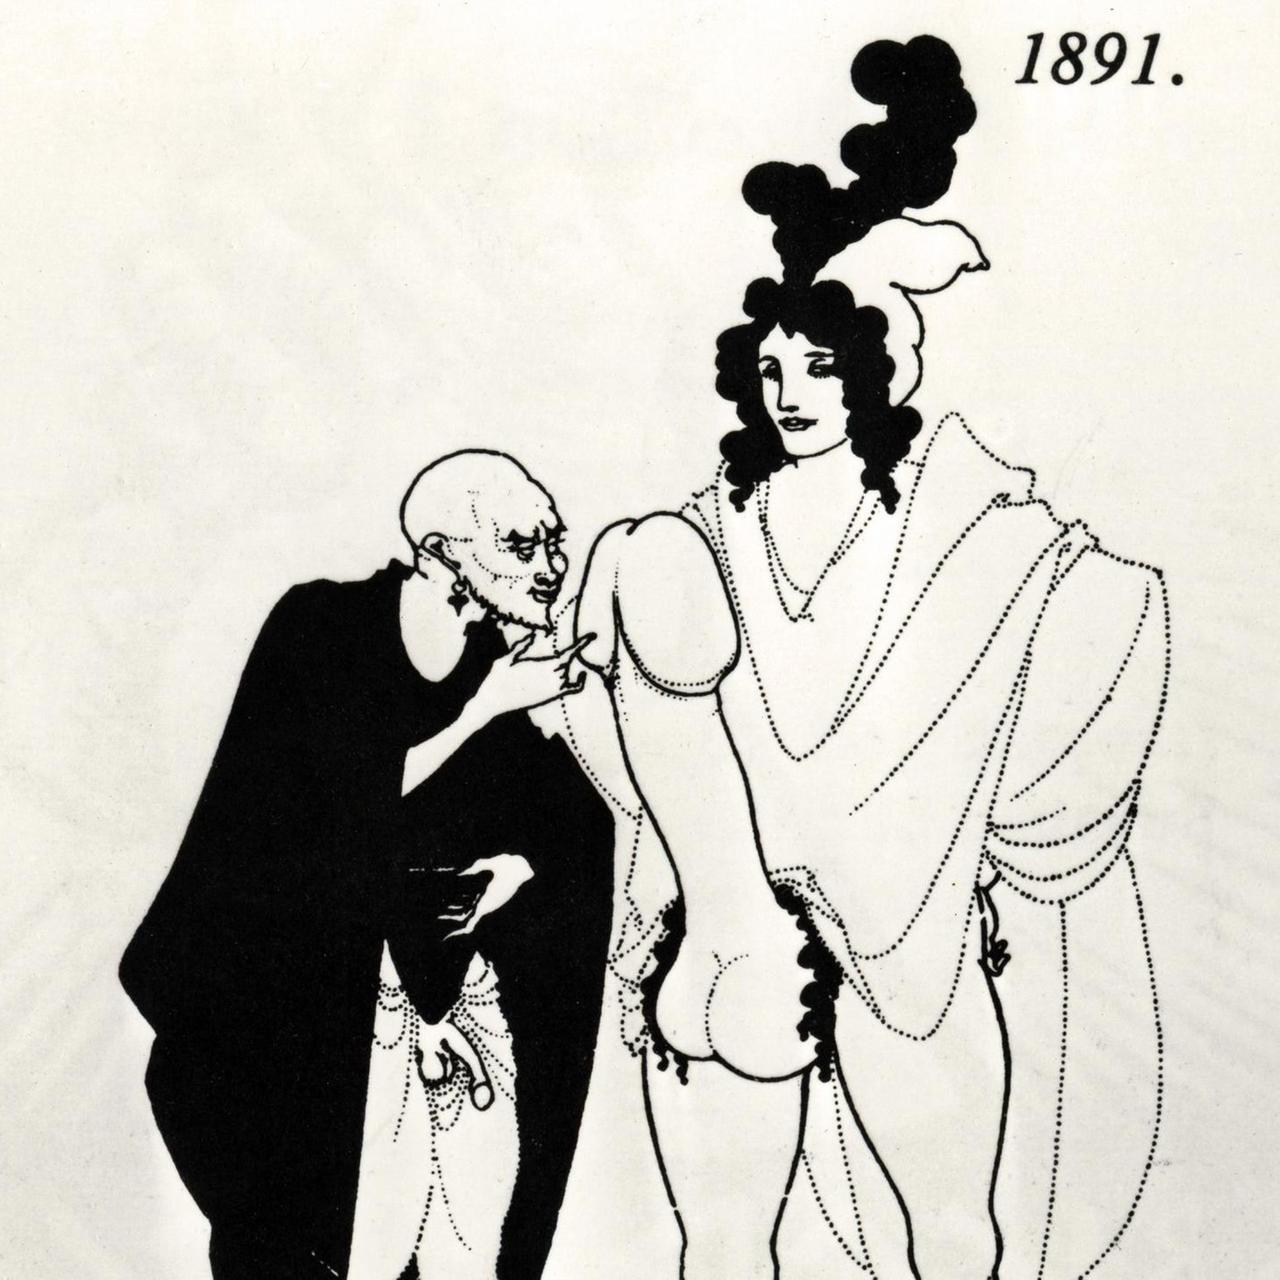 Manchen Zeitgenossen gingen Aubrey Beardsleys explizite Zeichnungen zu weit